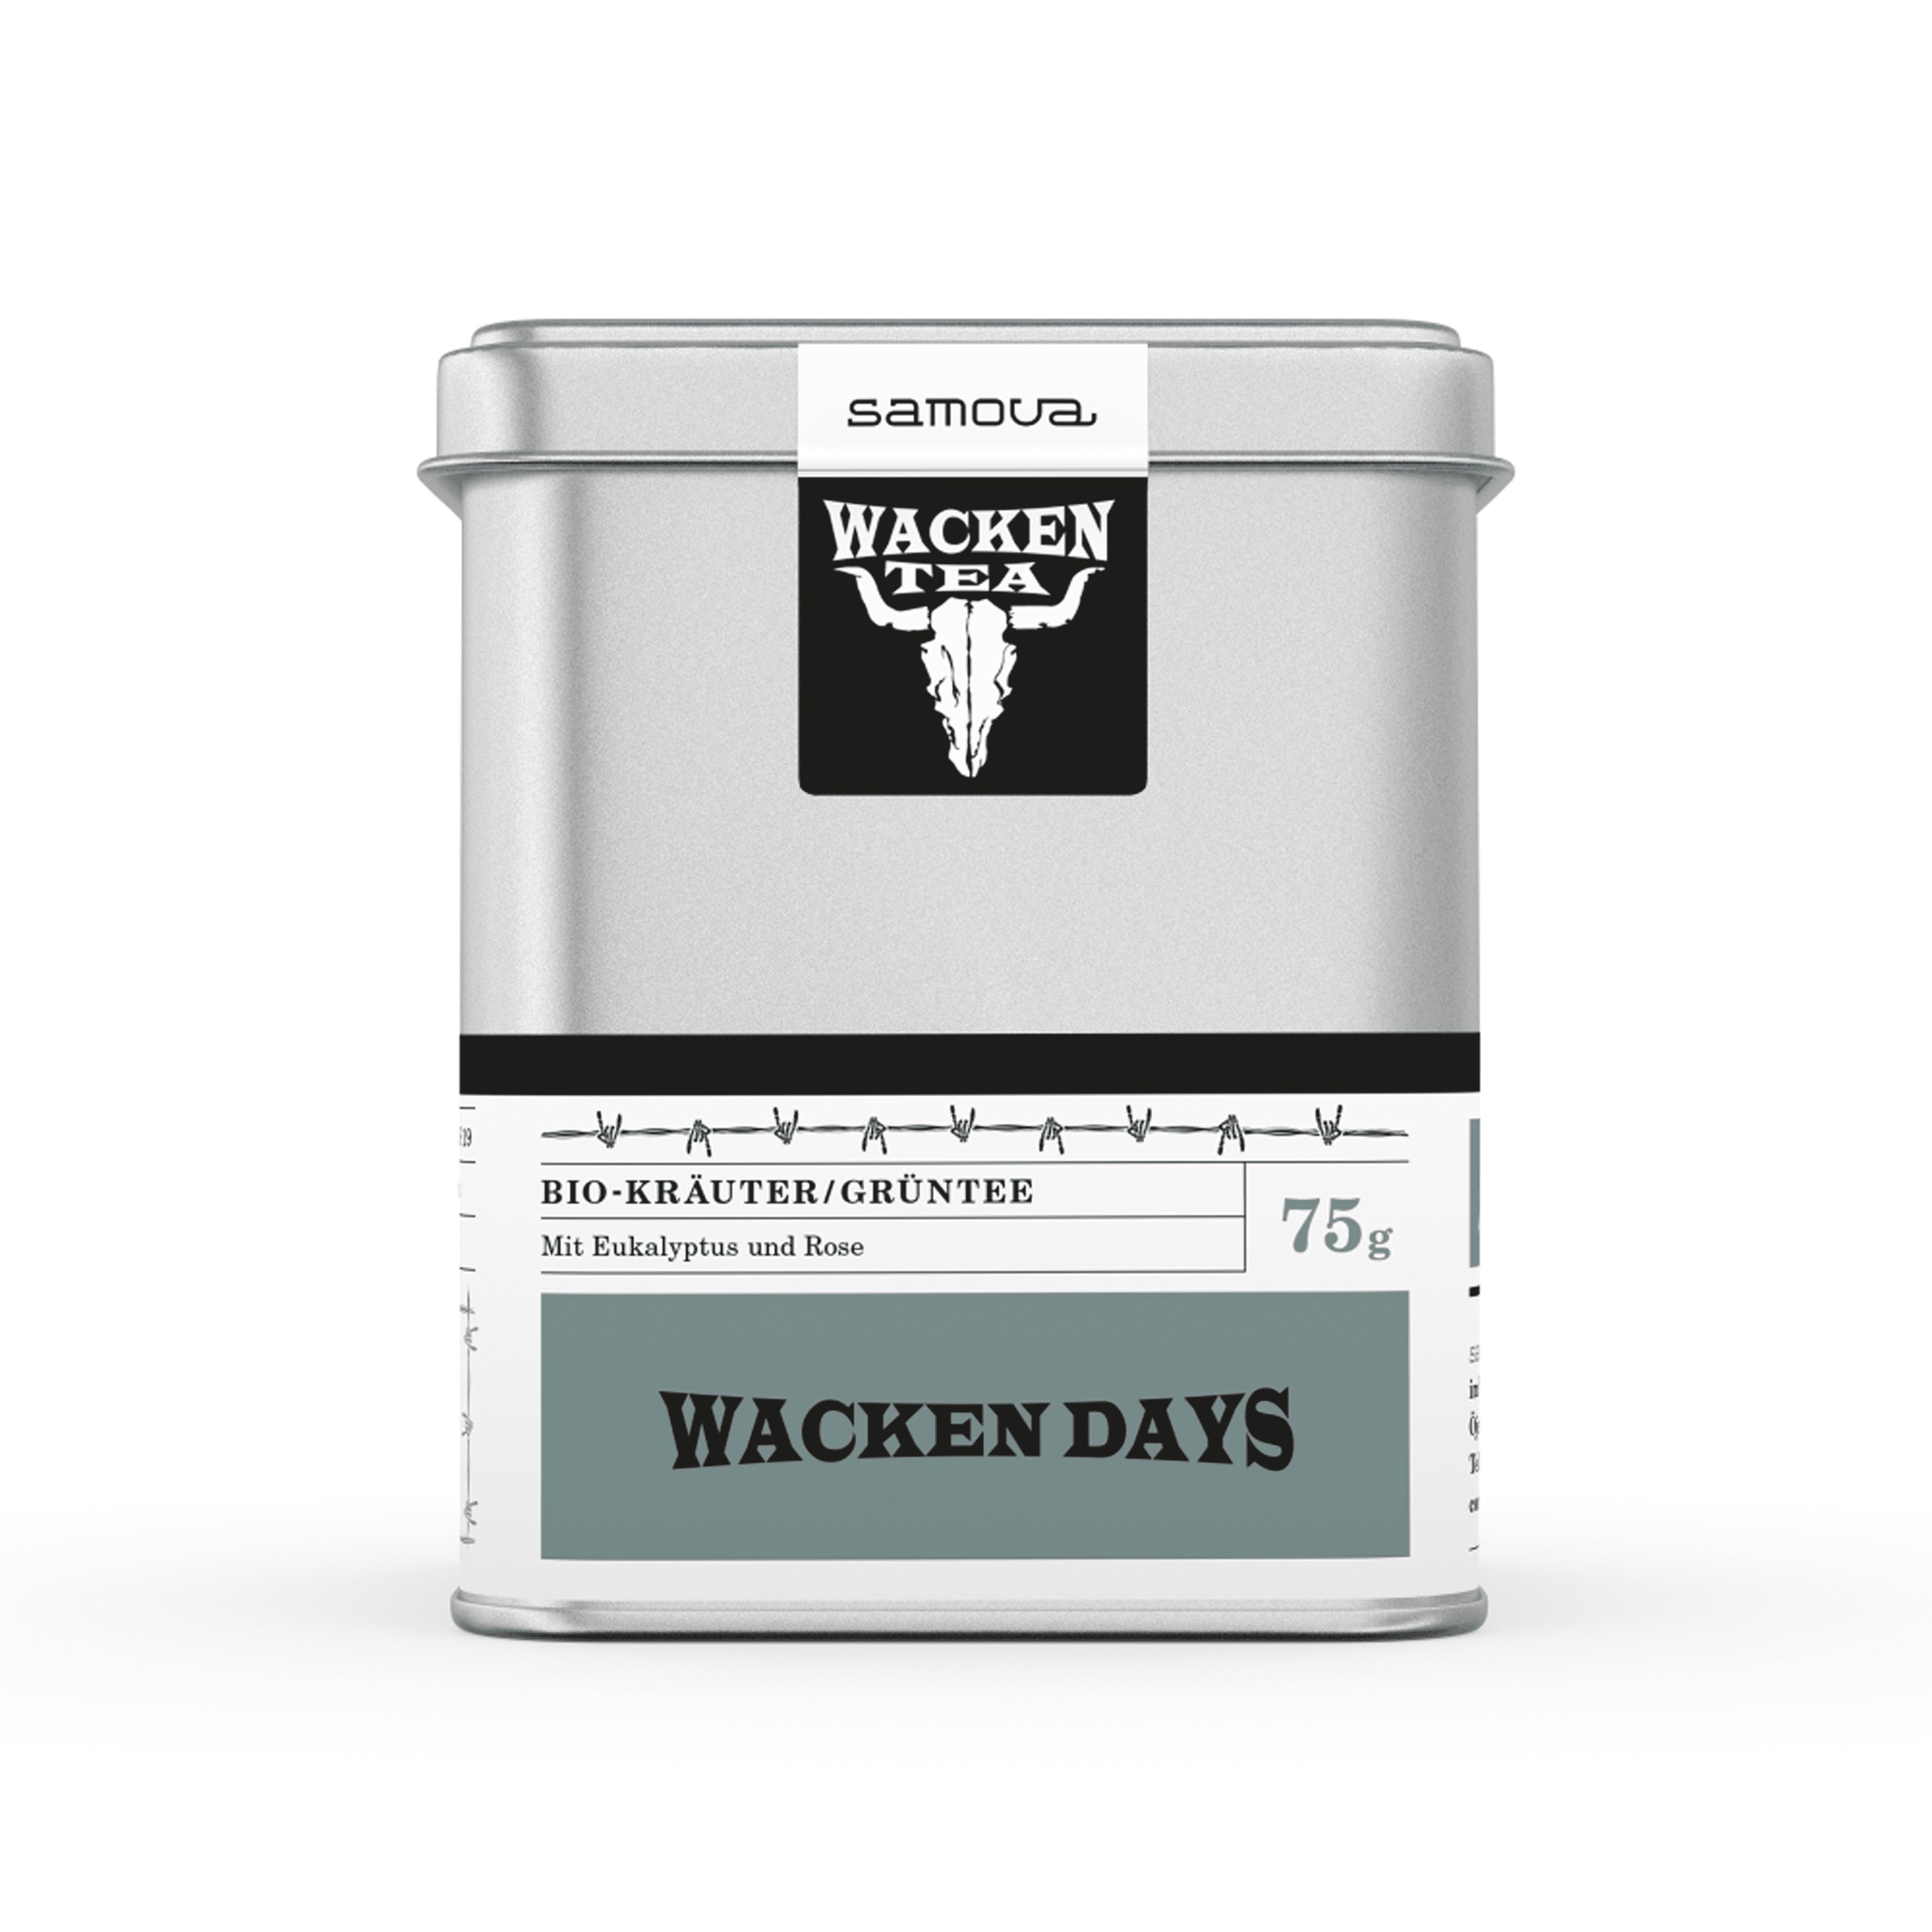 Can of Wacken Days te